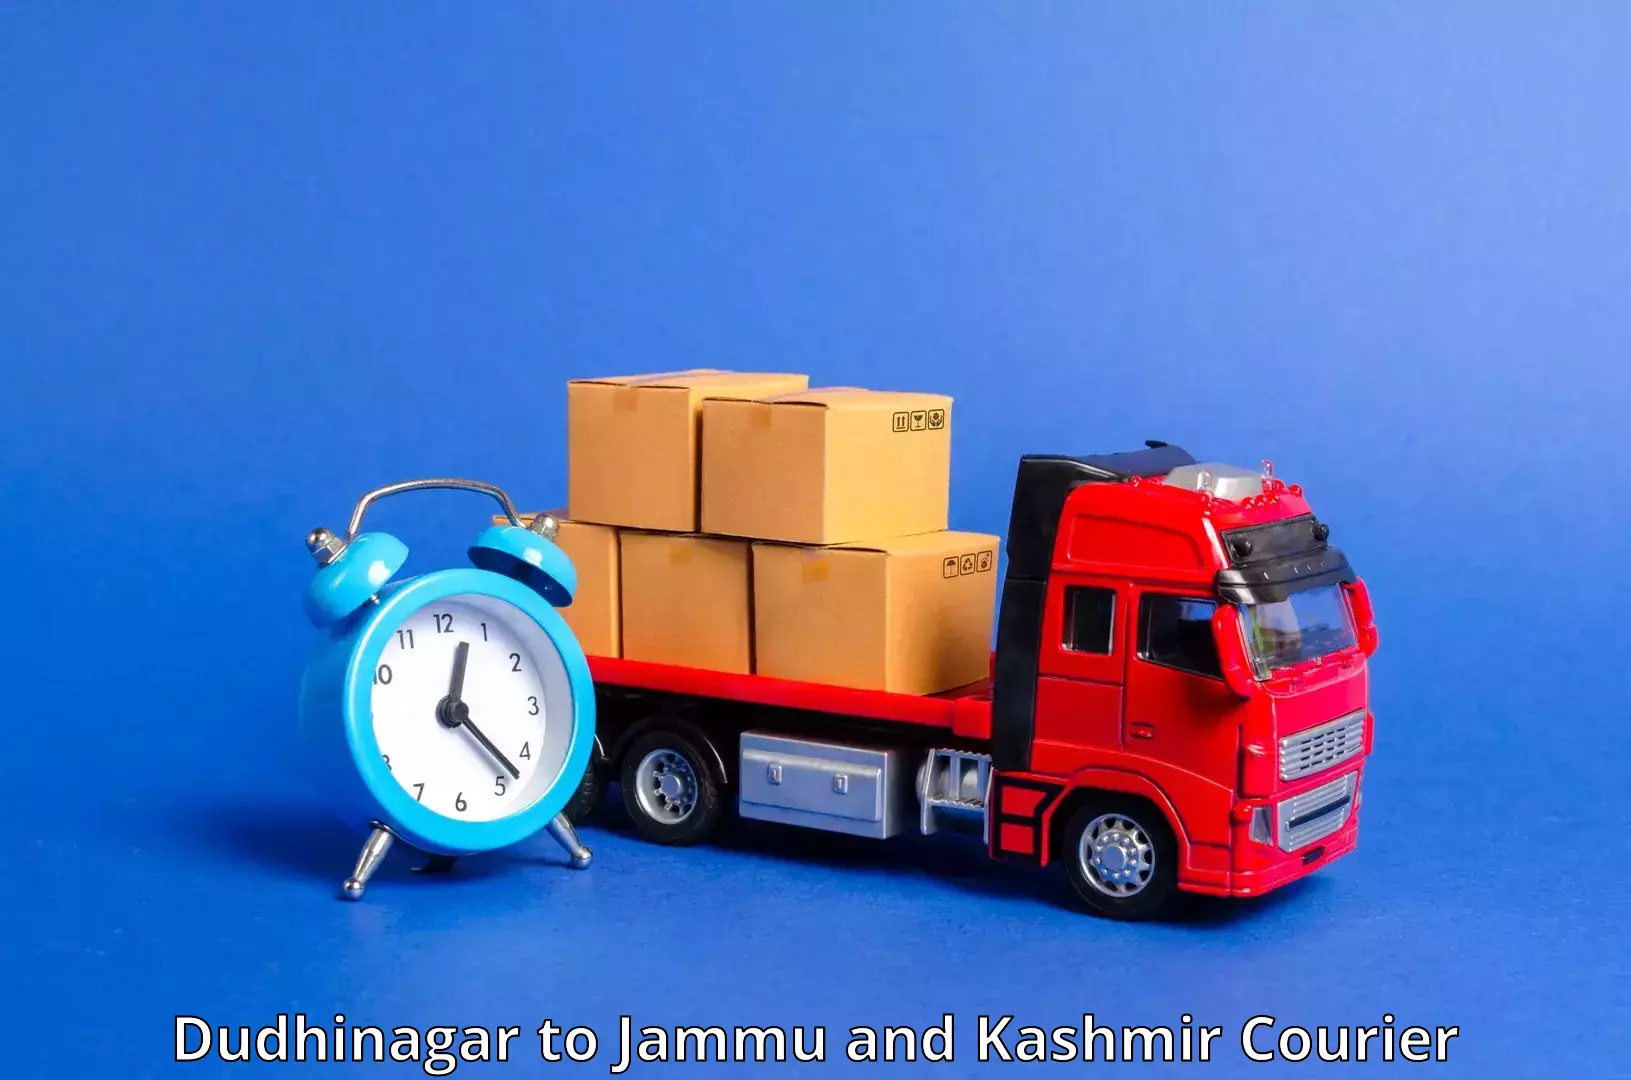 Express courier capabilities Dudhinagar to Kulgam